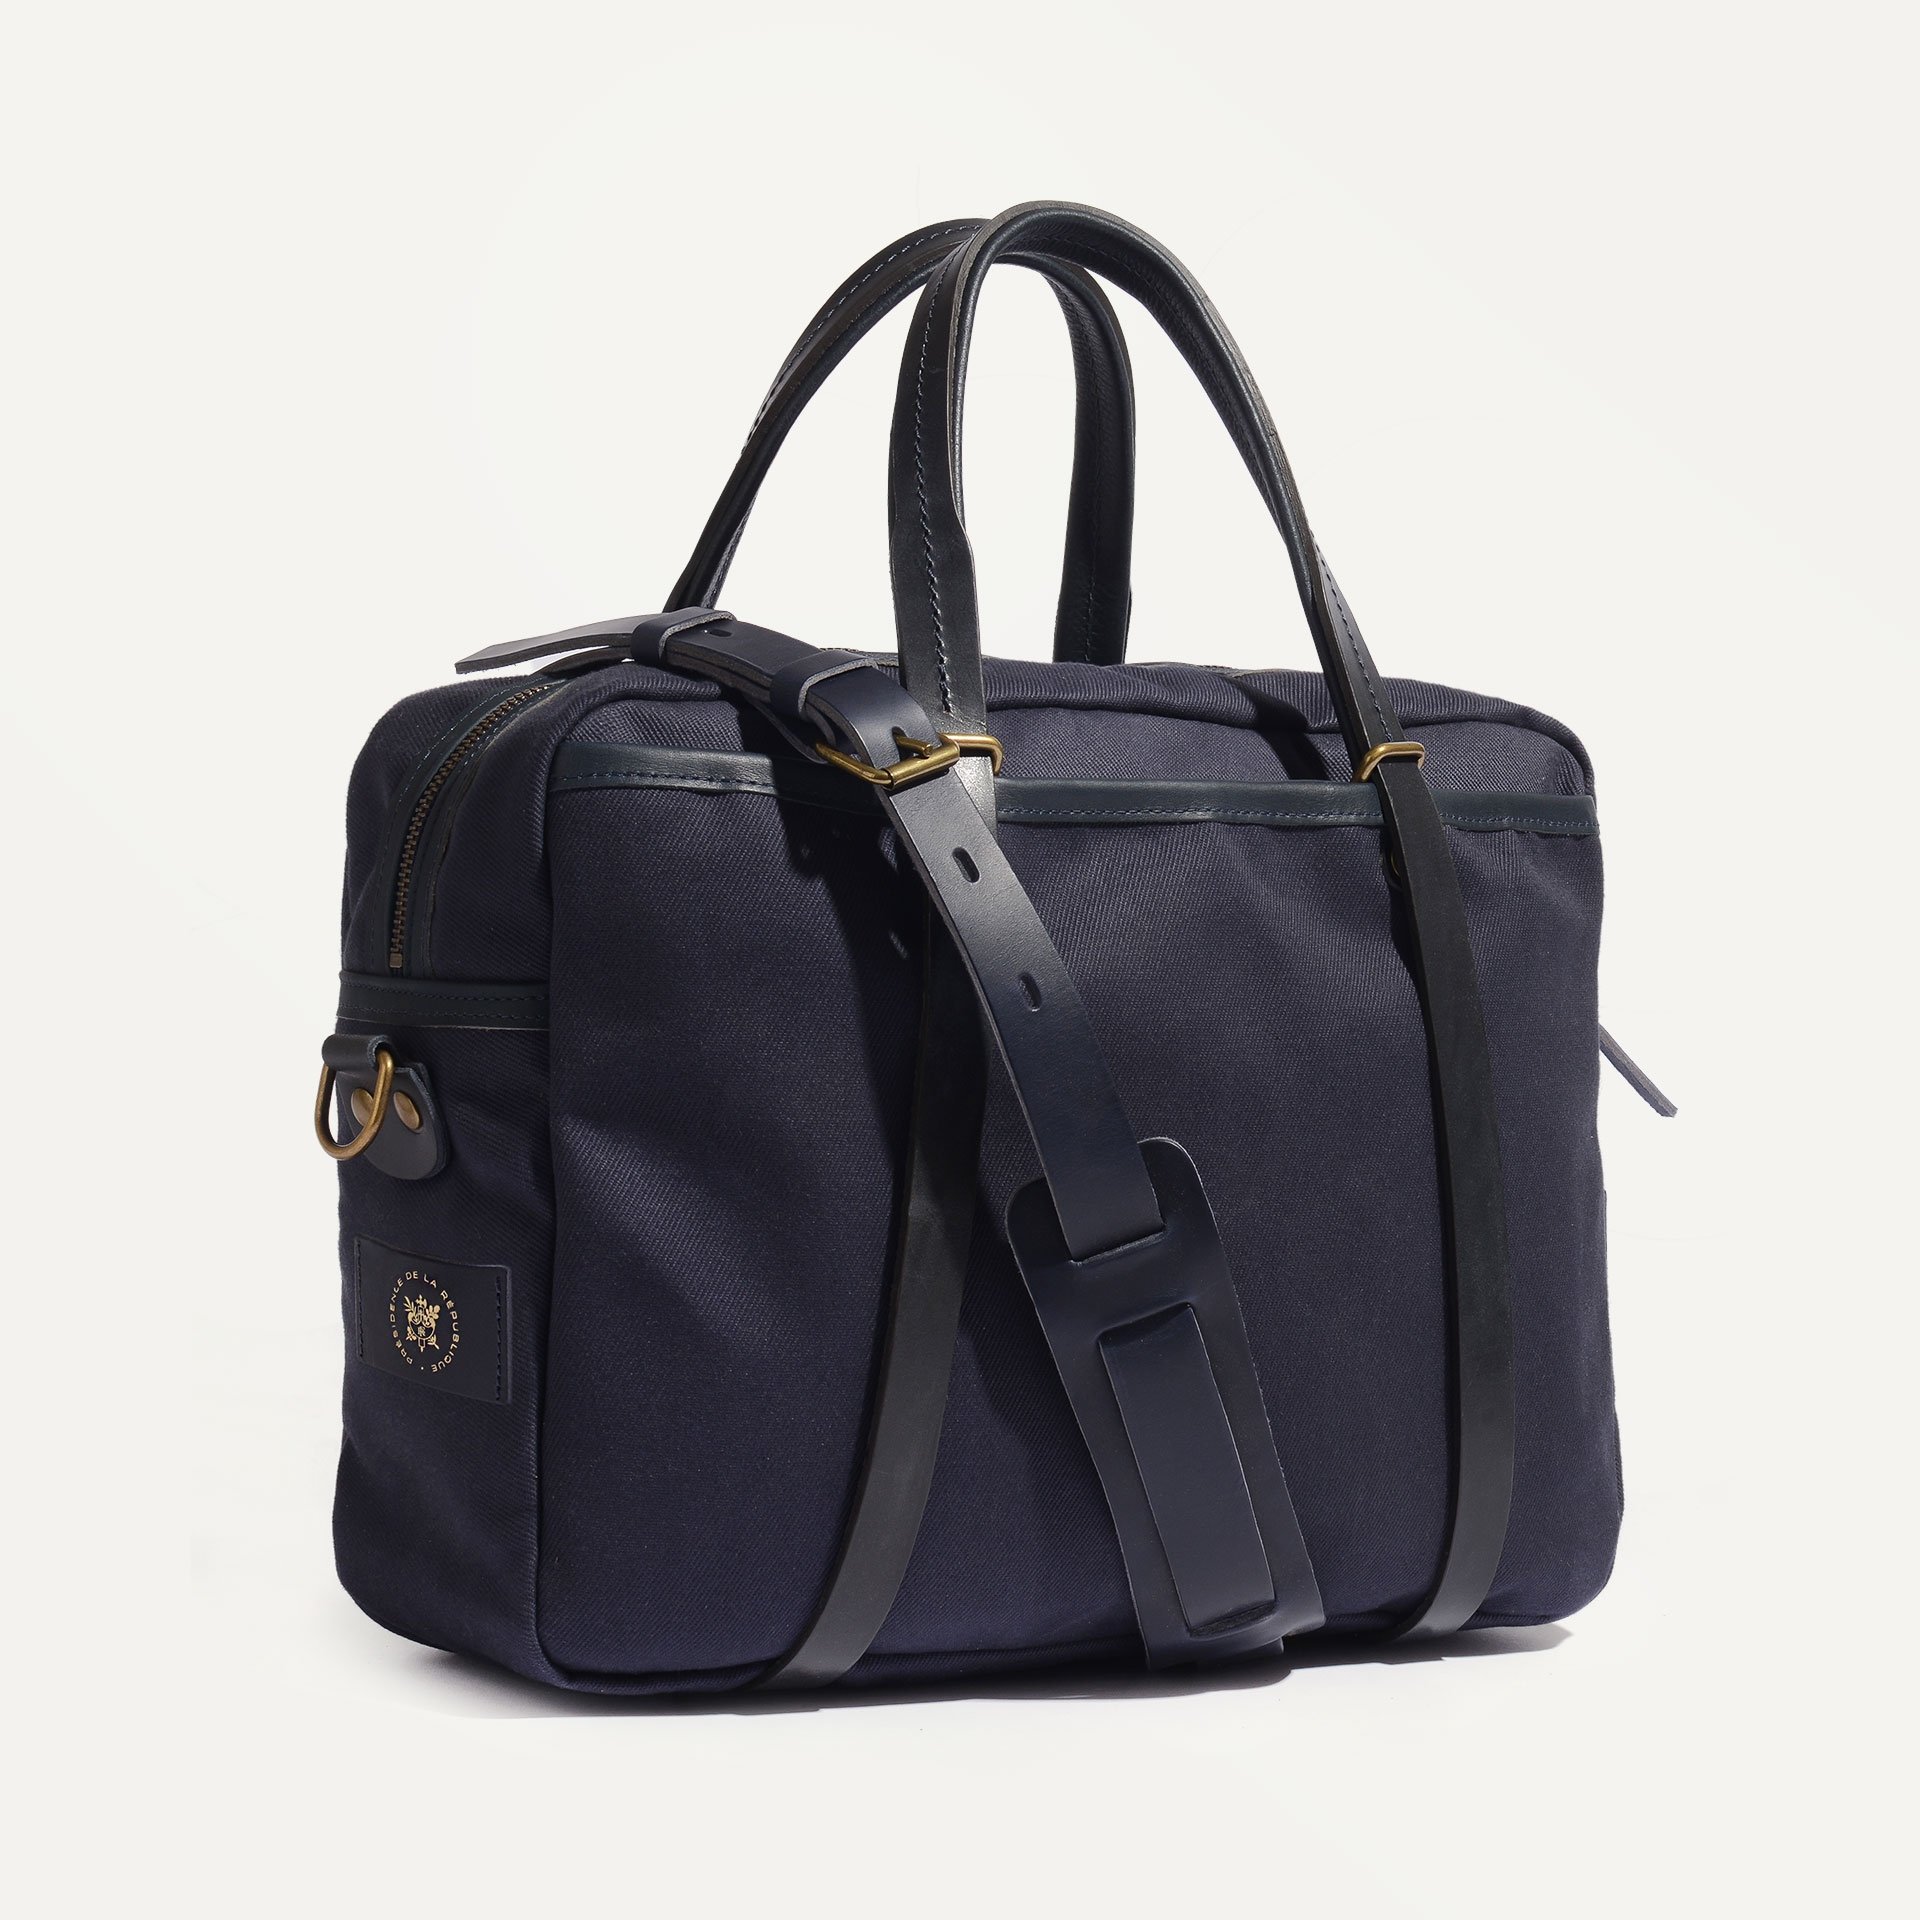 SUMO laptop bag - Bleu de Chauffe x Élysée / Navy Blue (image n°2)